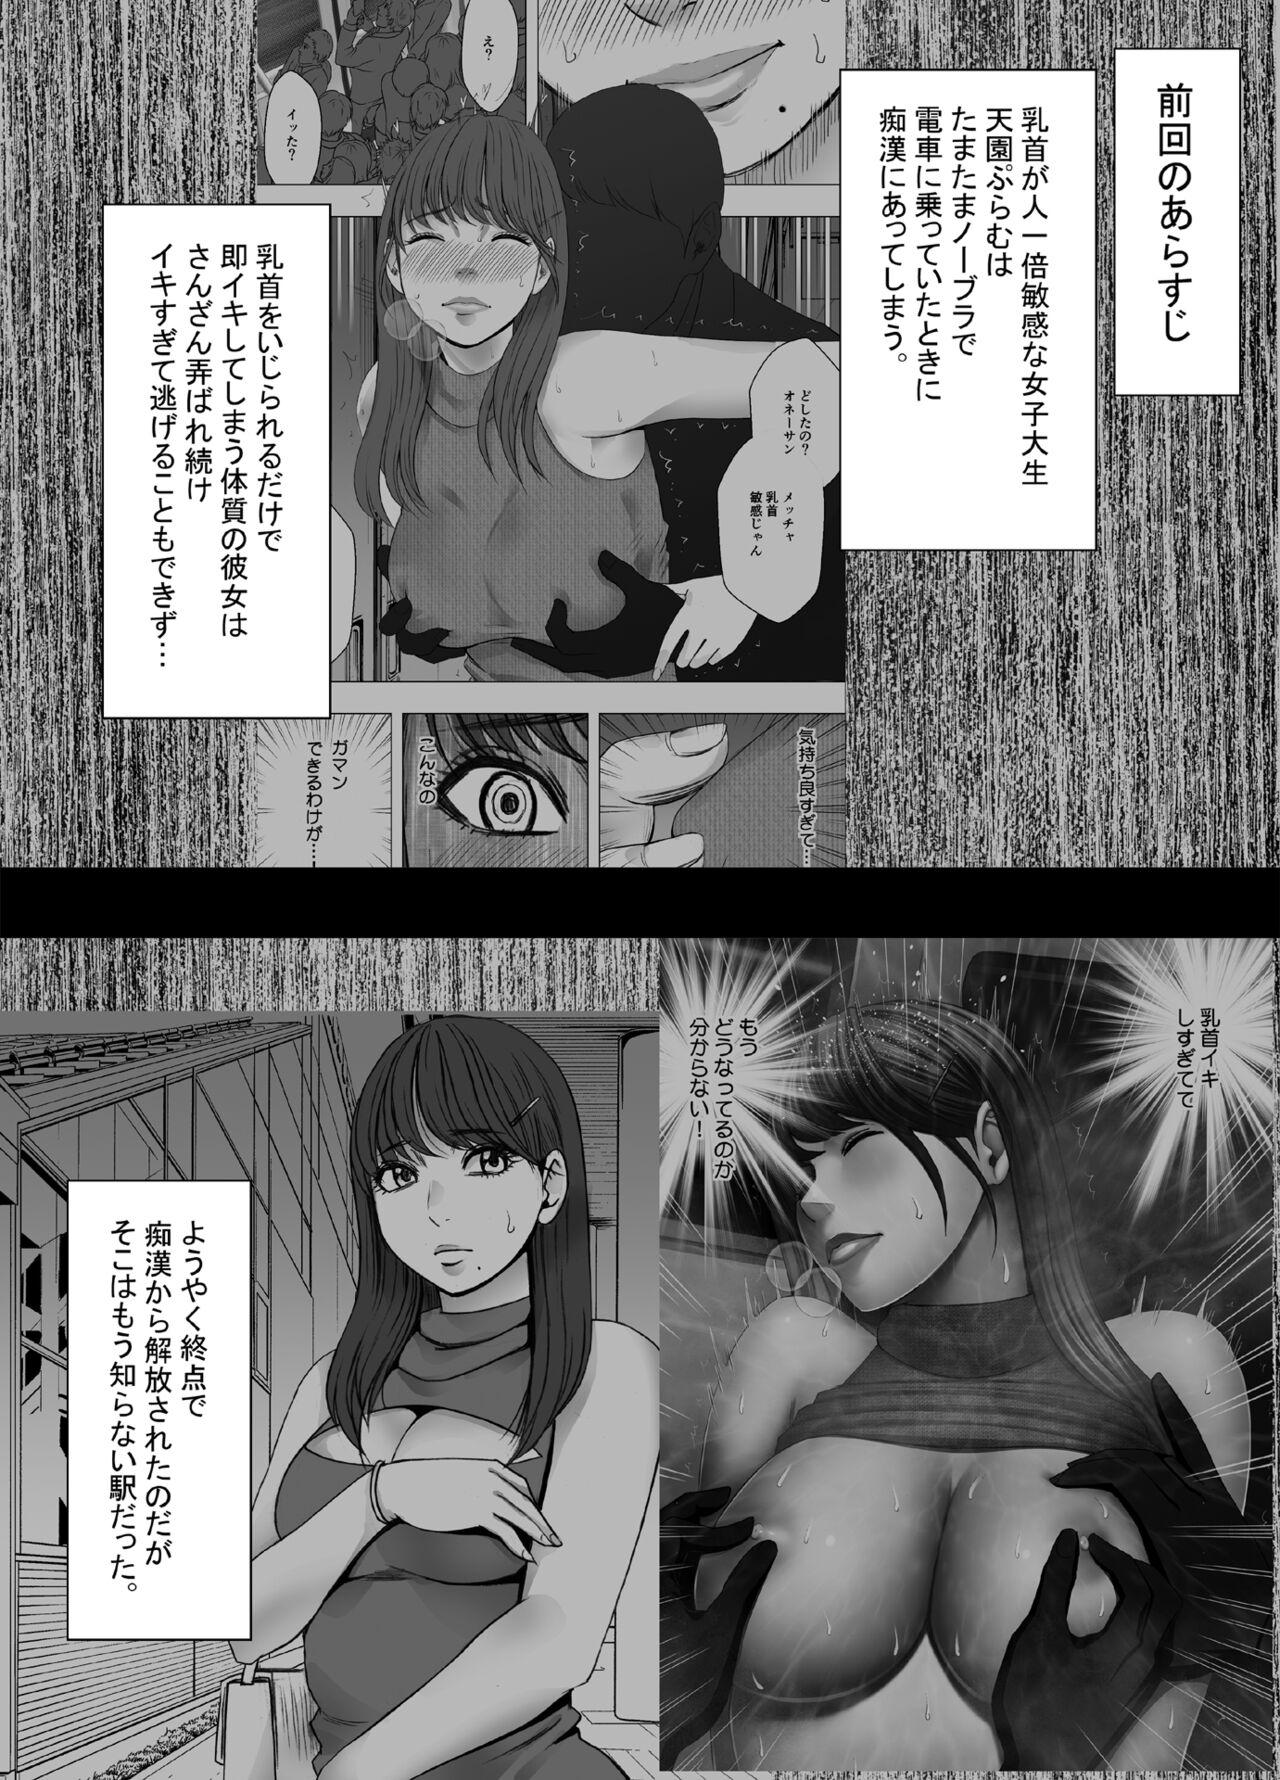 Little Chikubi de Sokuiki suru Joshidaisei 4 - Original Furry - Page 2